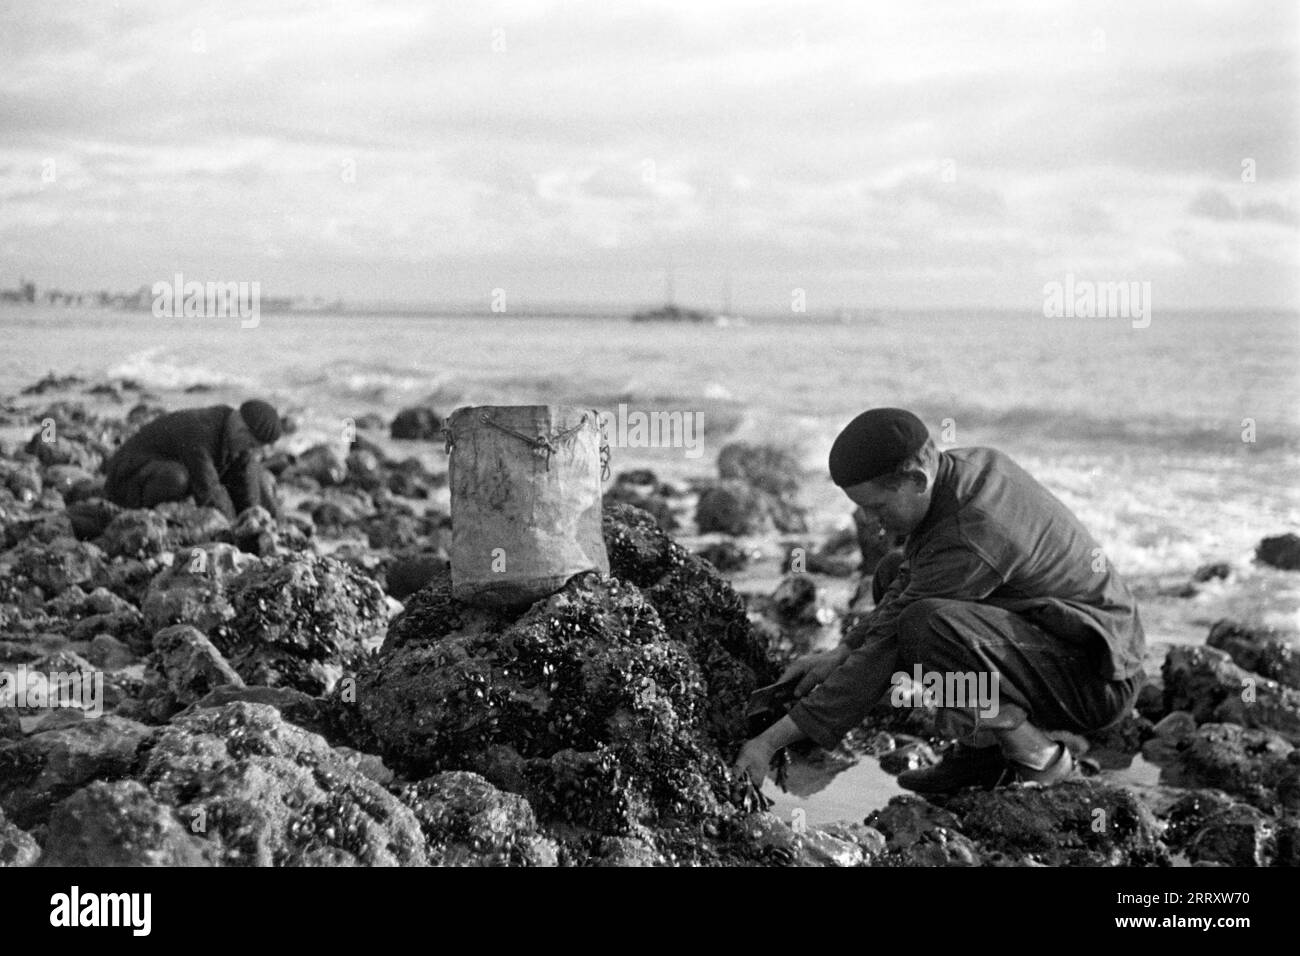 Muschelernter am Strand von le Havre, 1940. Raccoglitrice di conchiglie sulla spiaggia di le Havre, 1940. Foto Stock